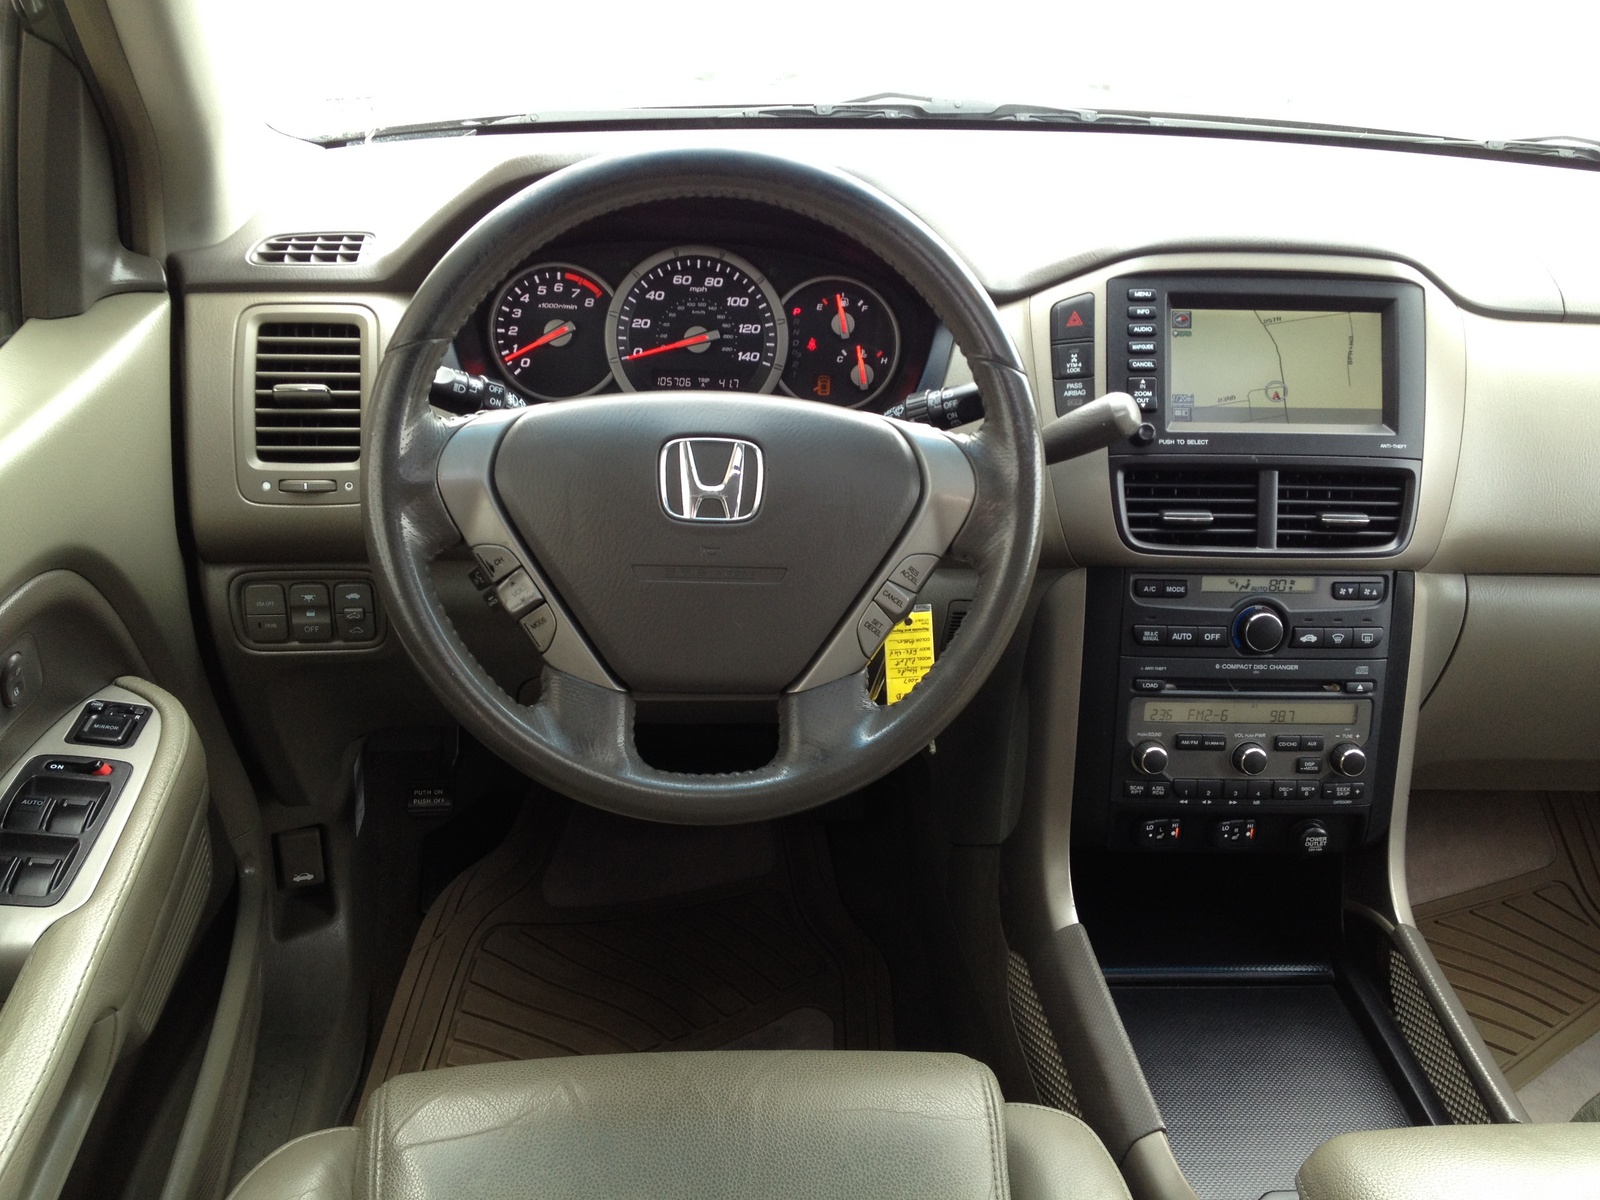 2007 Honda pilot interior parts #7